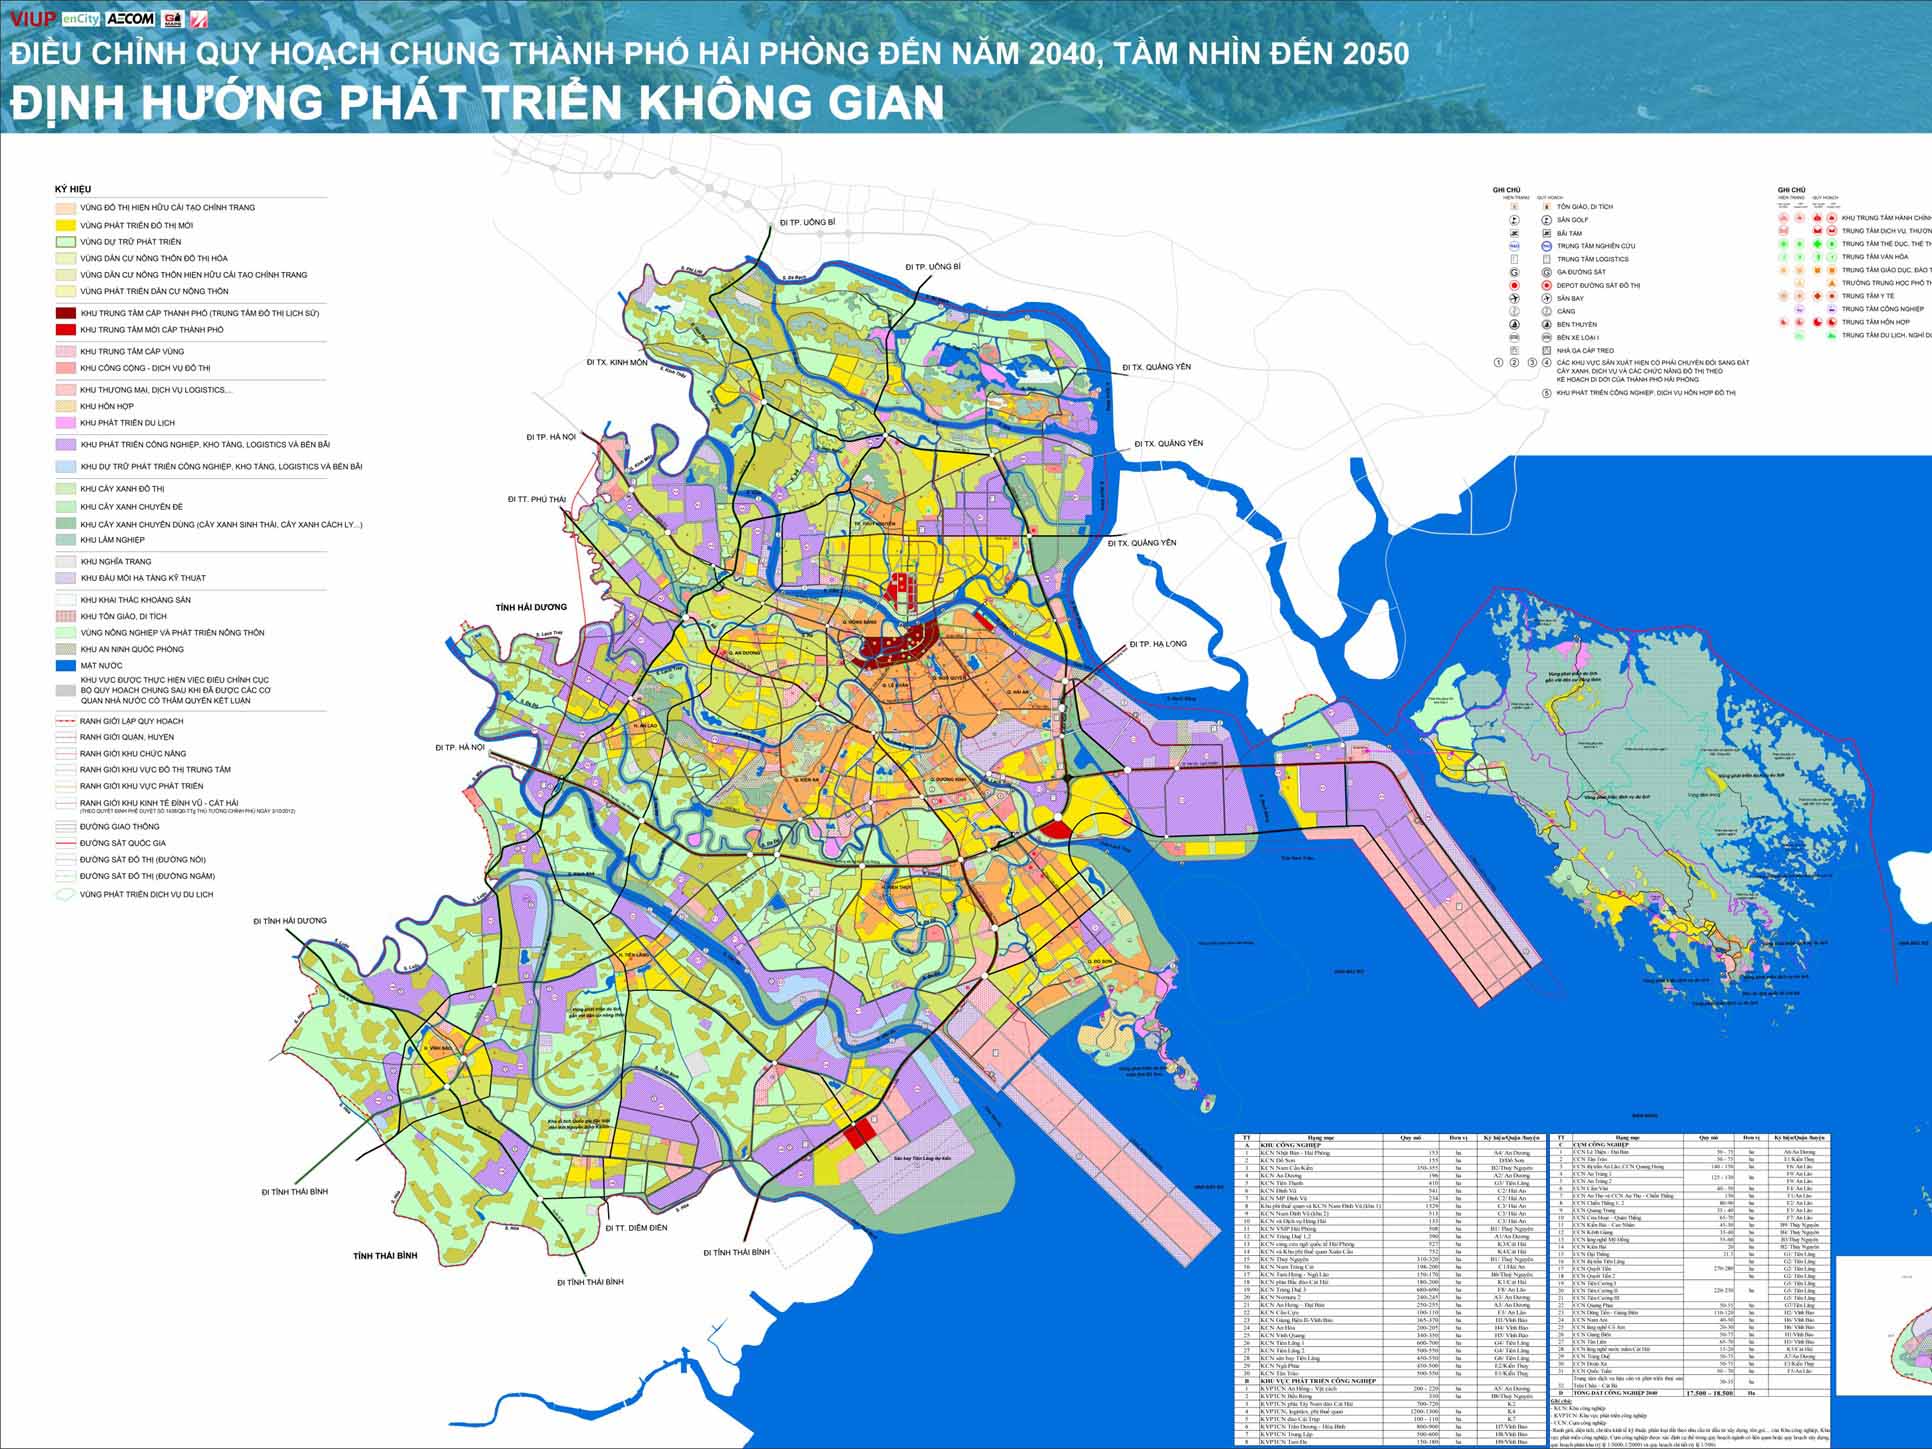 Điều chỉnh Quy hoạch chung thành phố Hải Phòng đến năm 2040, tầm nhìn đến năm 2050